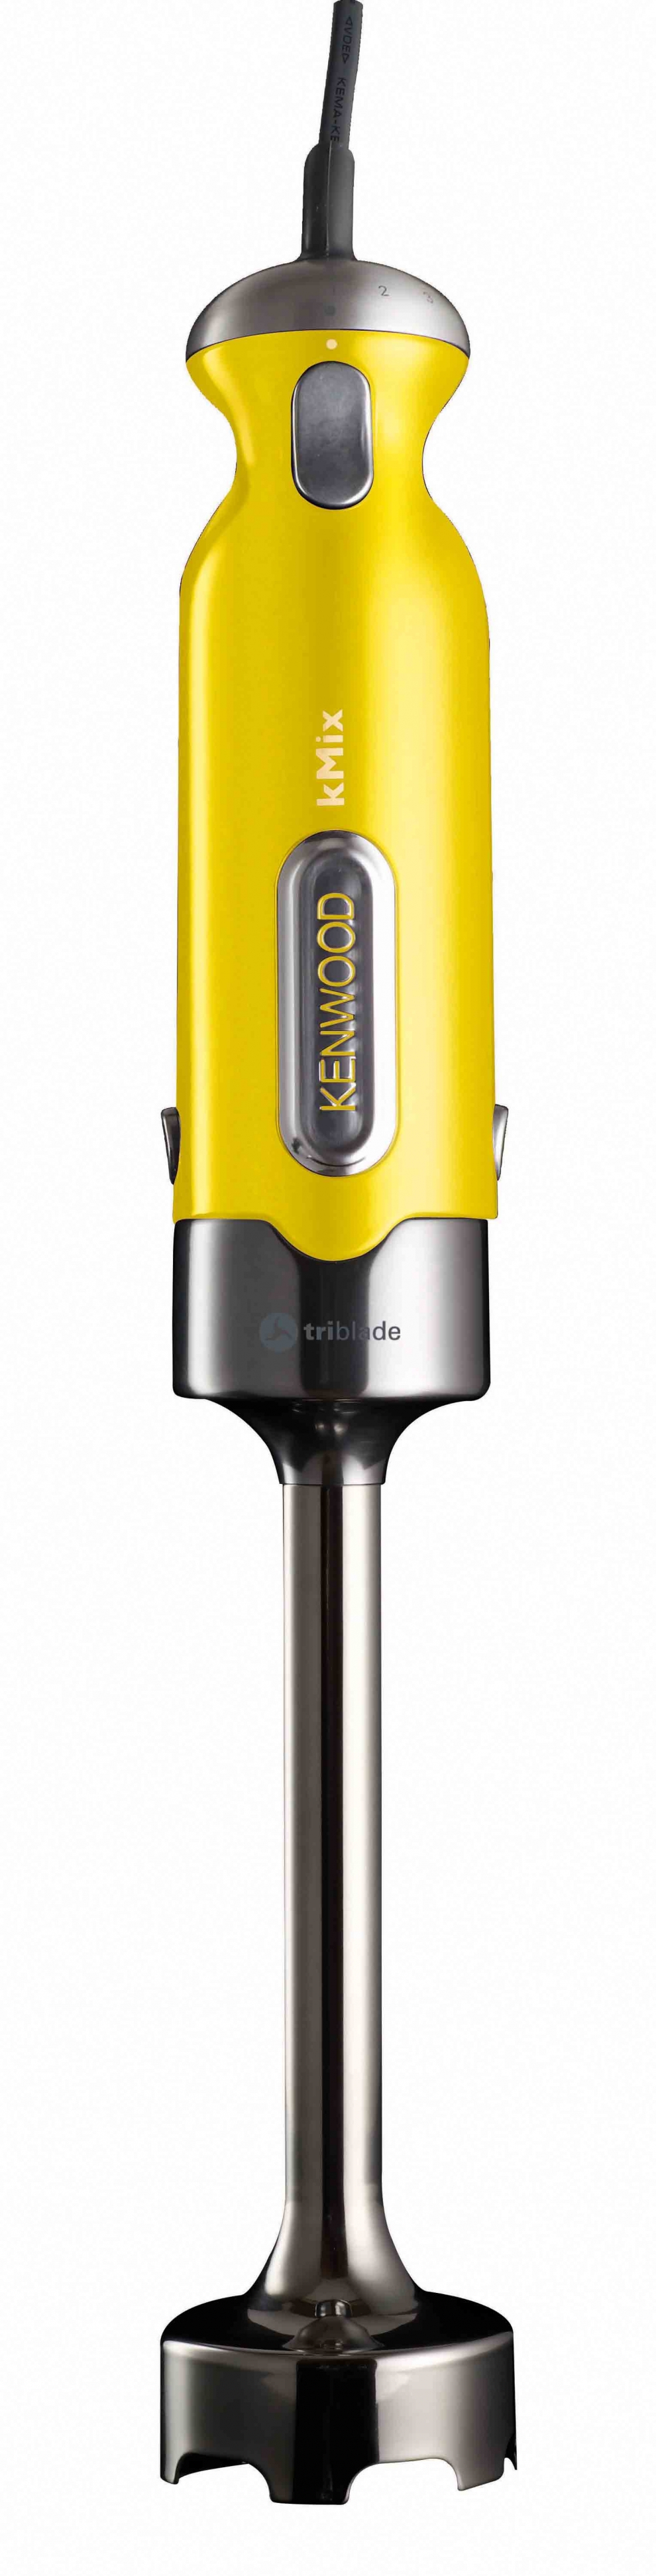 Mixeur Triblade métal Kenwood Kmix jaune - HB858 - KENWOOD